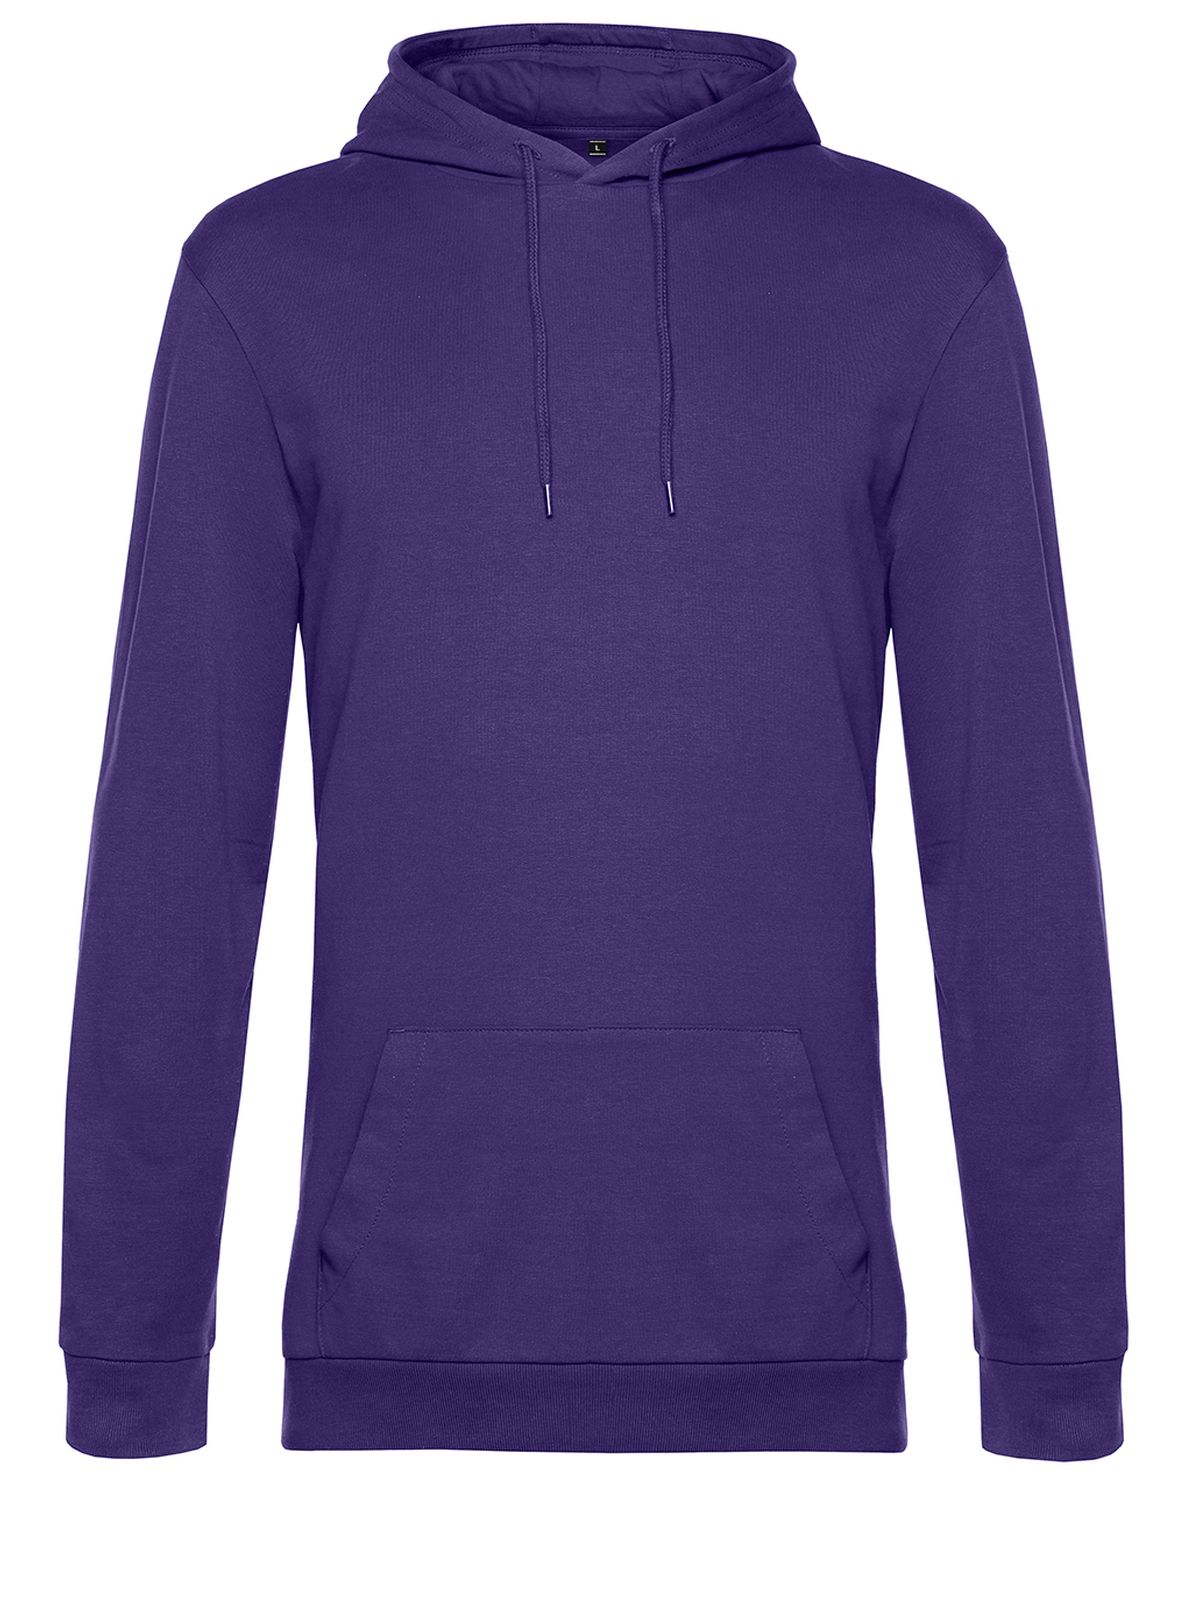 hoodie-radiant-purple.webp